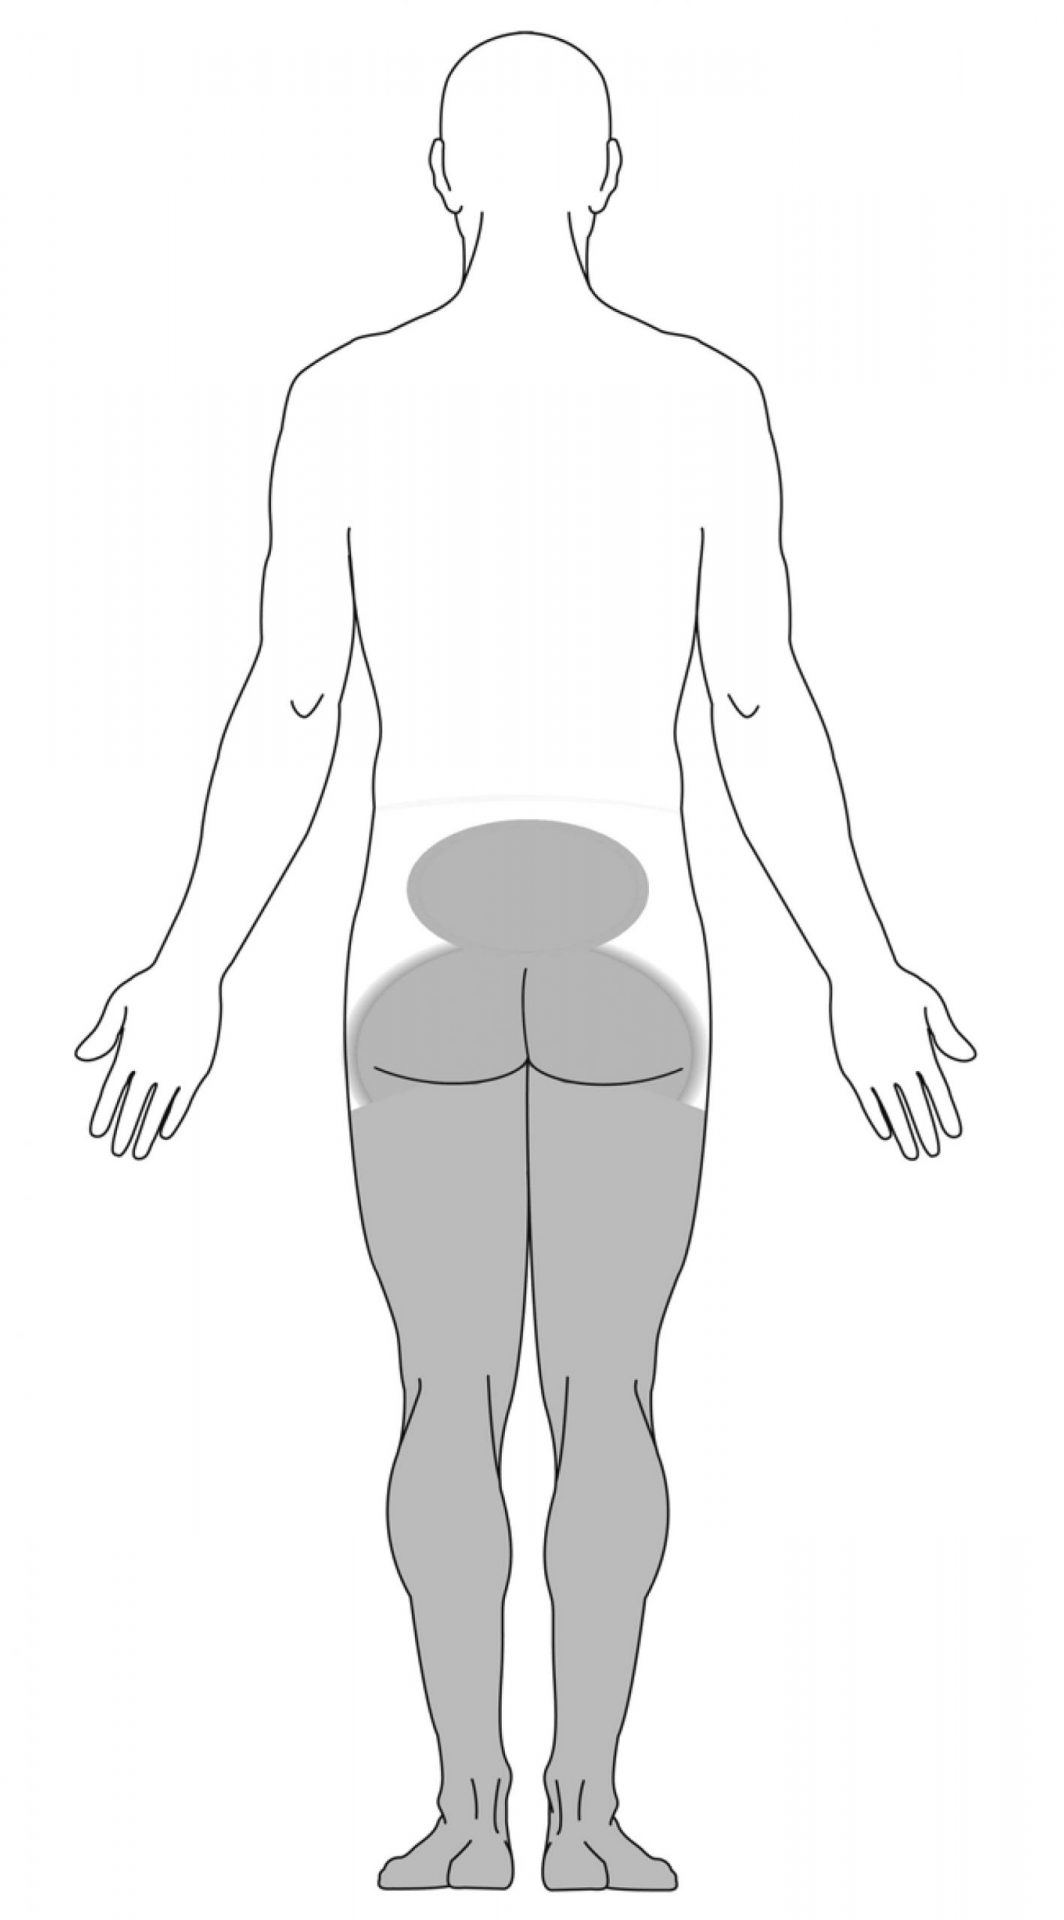 أعراض في الساقين بسبب متلازمة ذيل الفرس